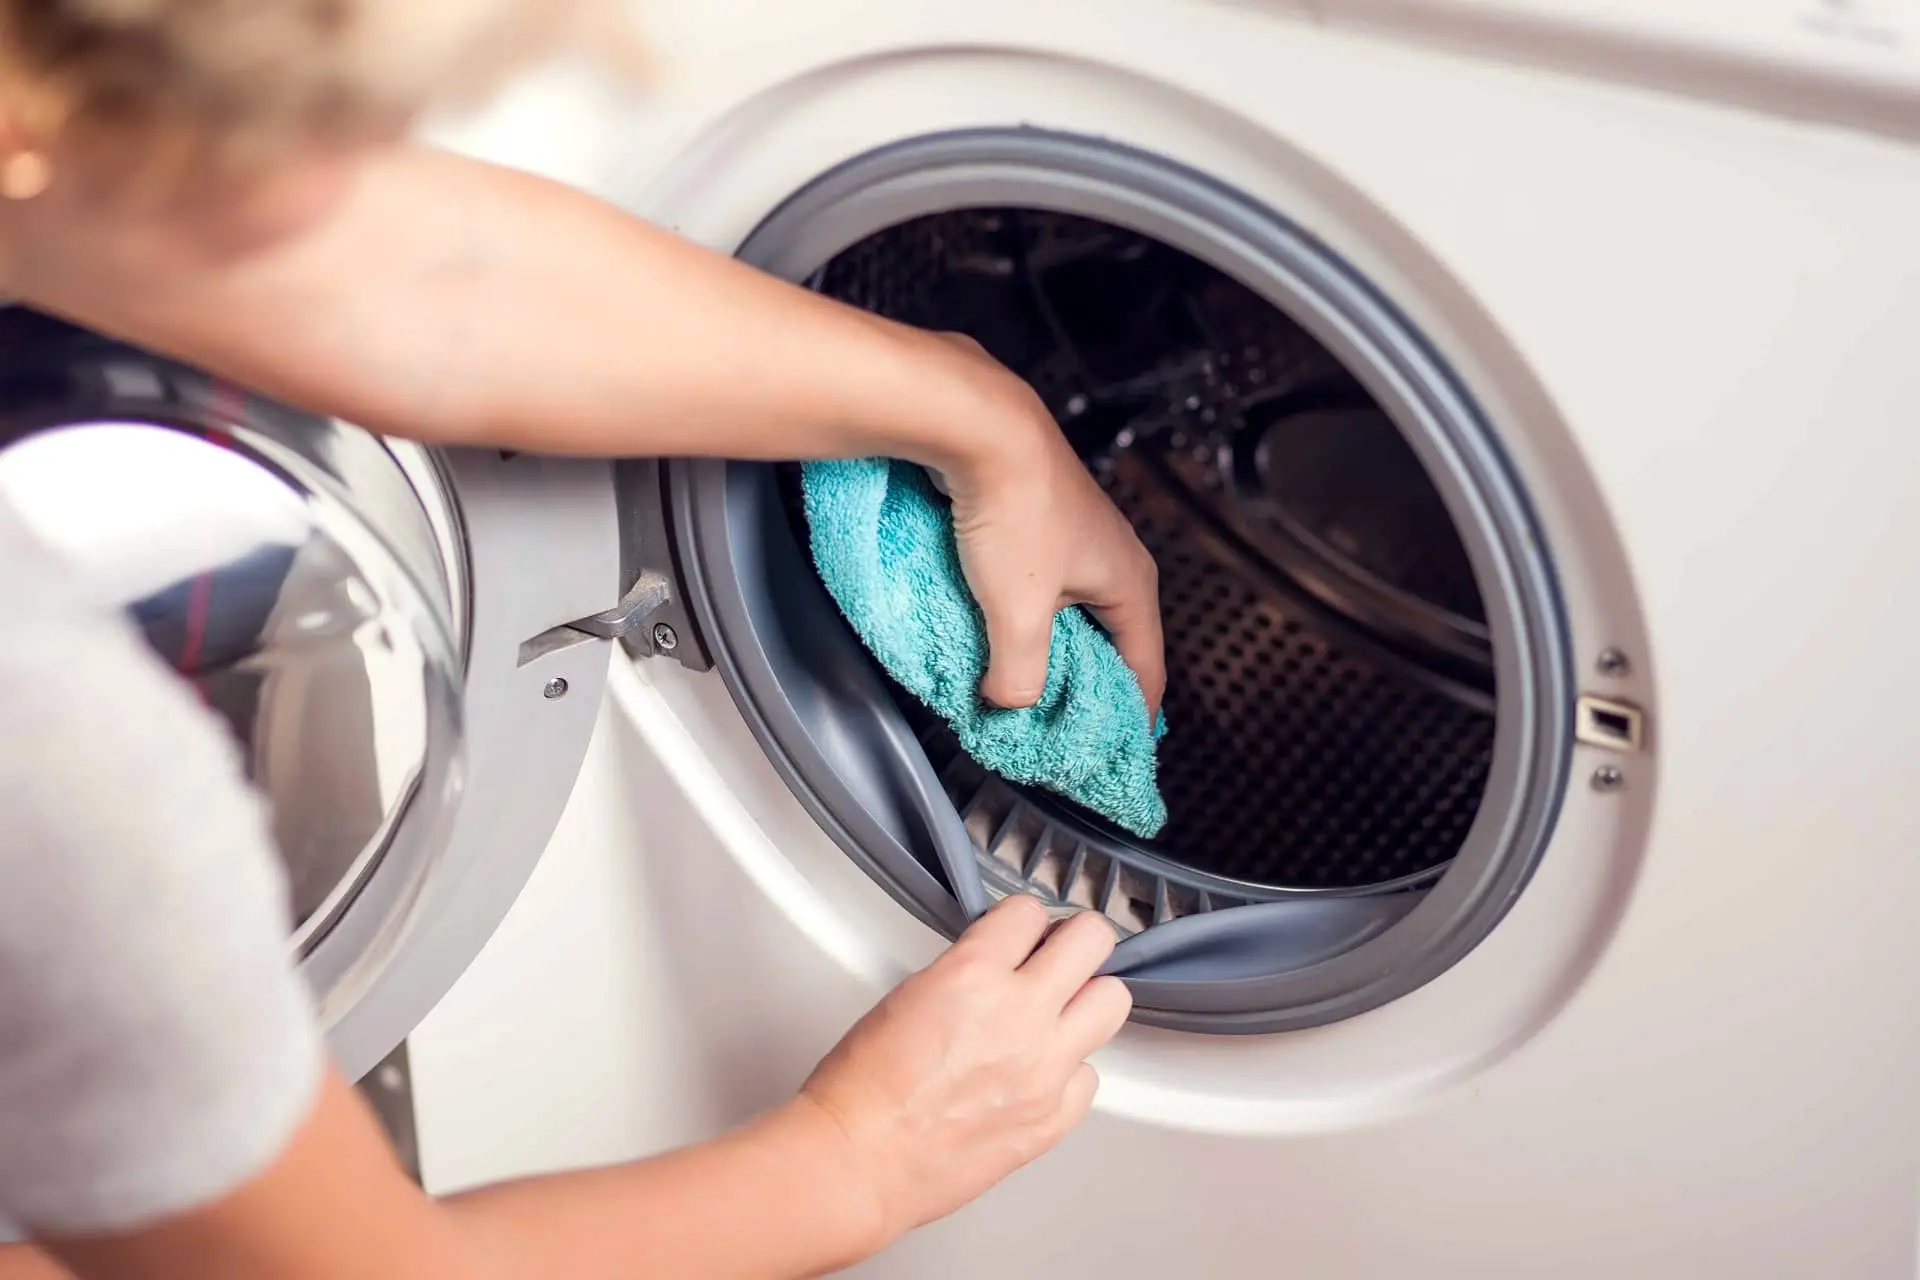 mantenimiento lavadora - Cómo se le da mantenimiento a la lavadora